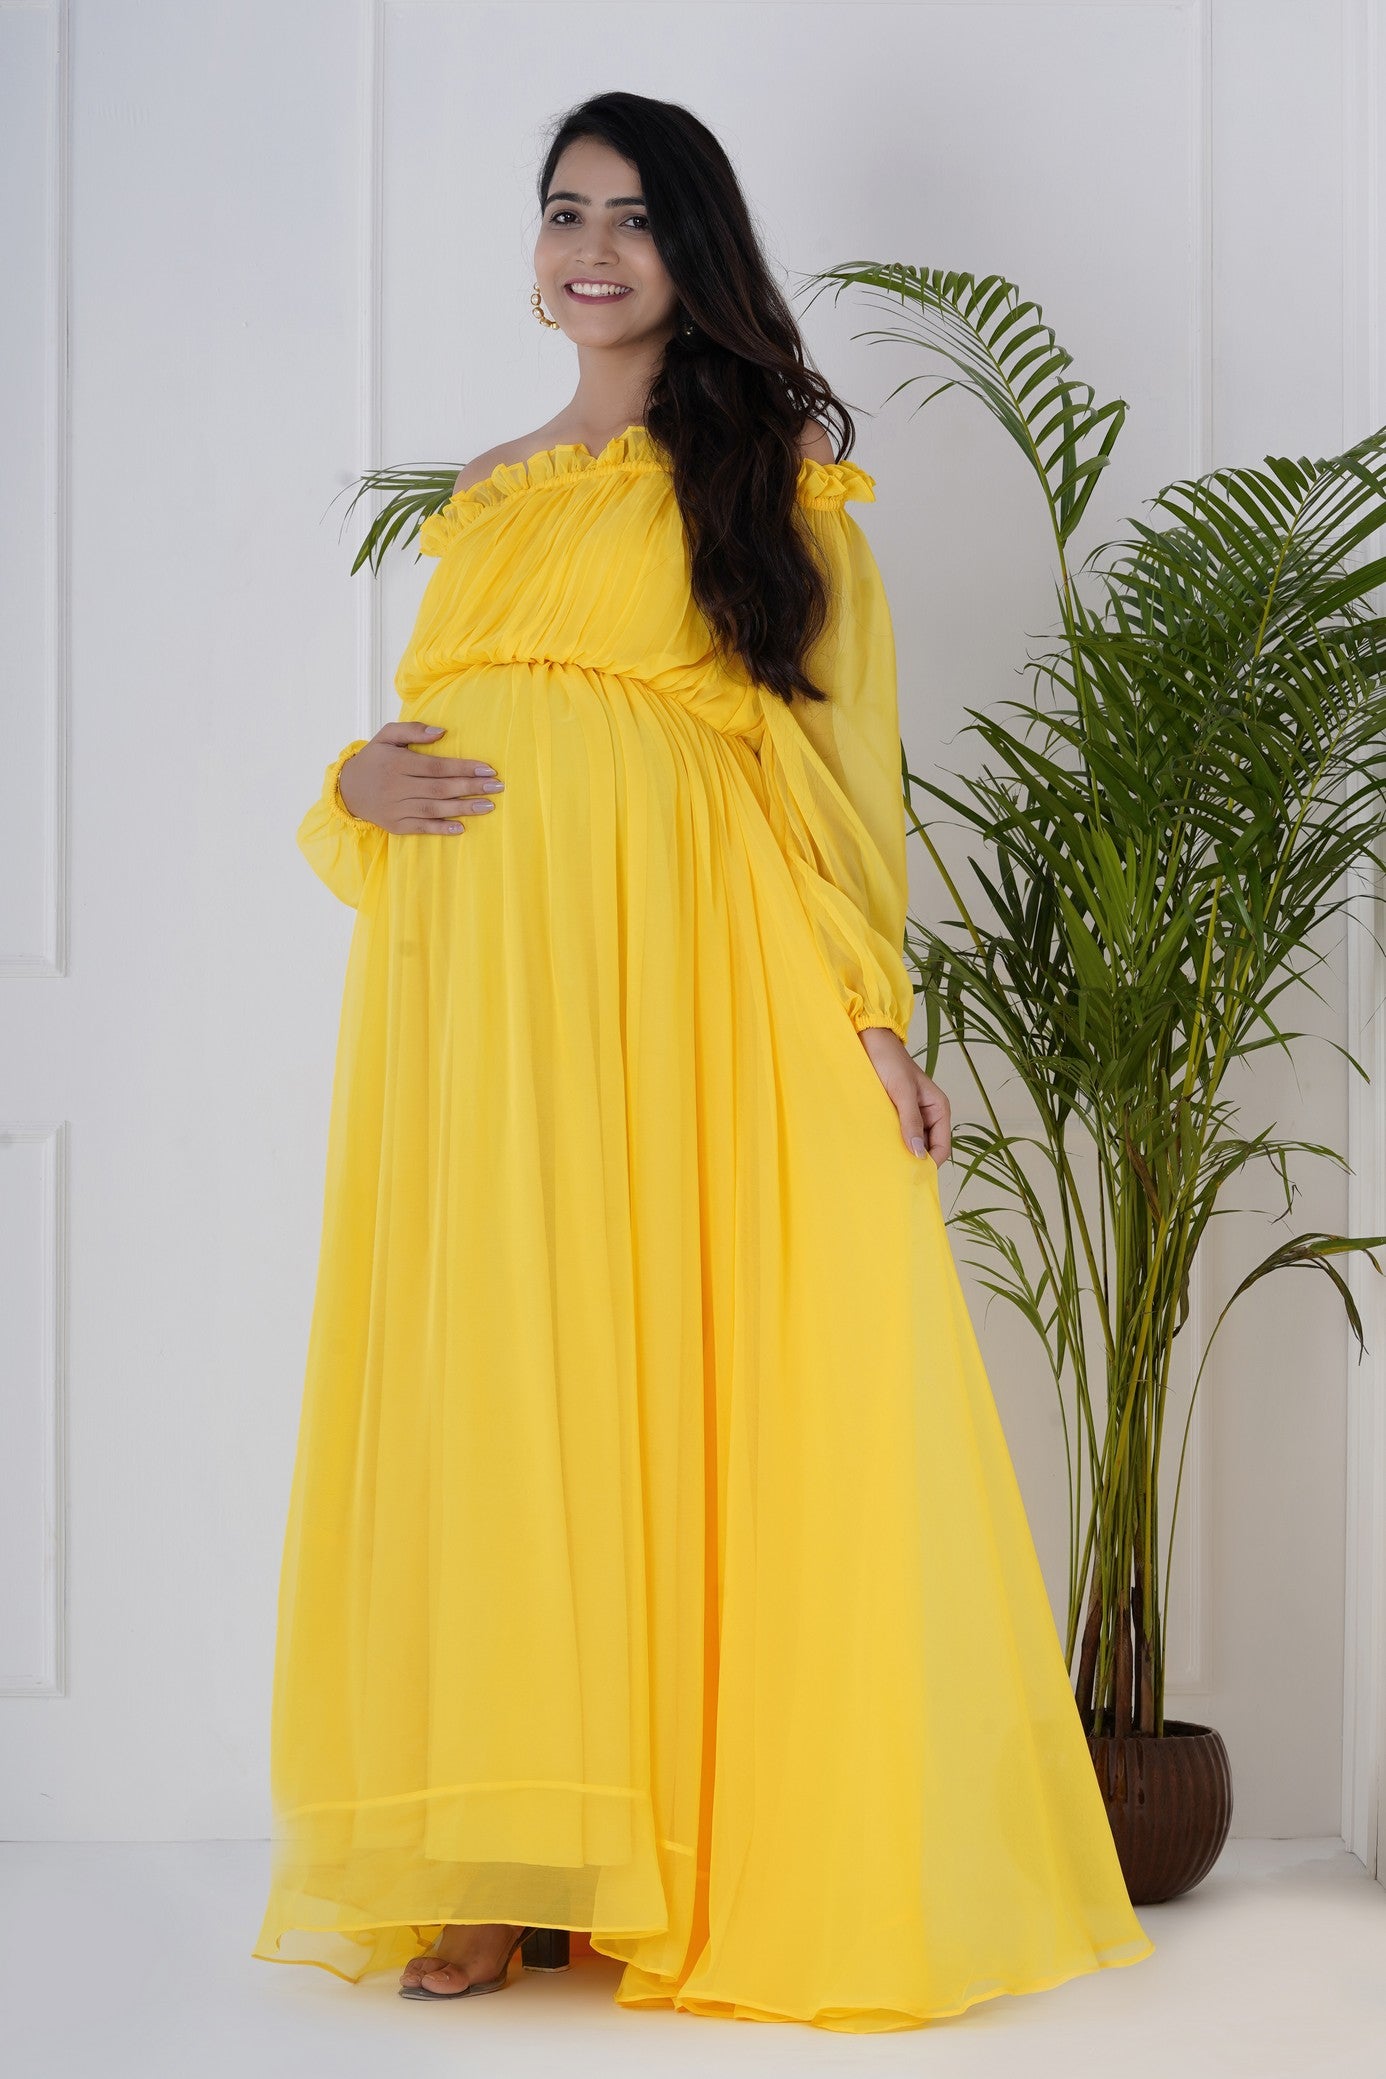 Maternity dresses for baby shower